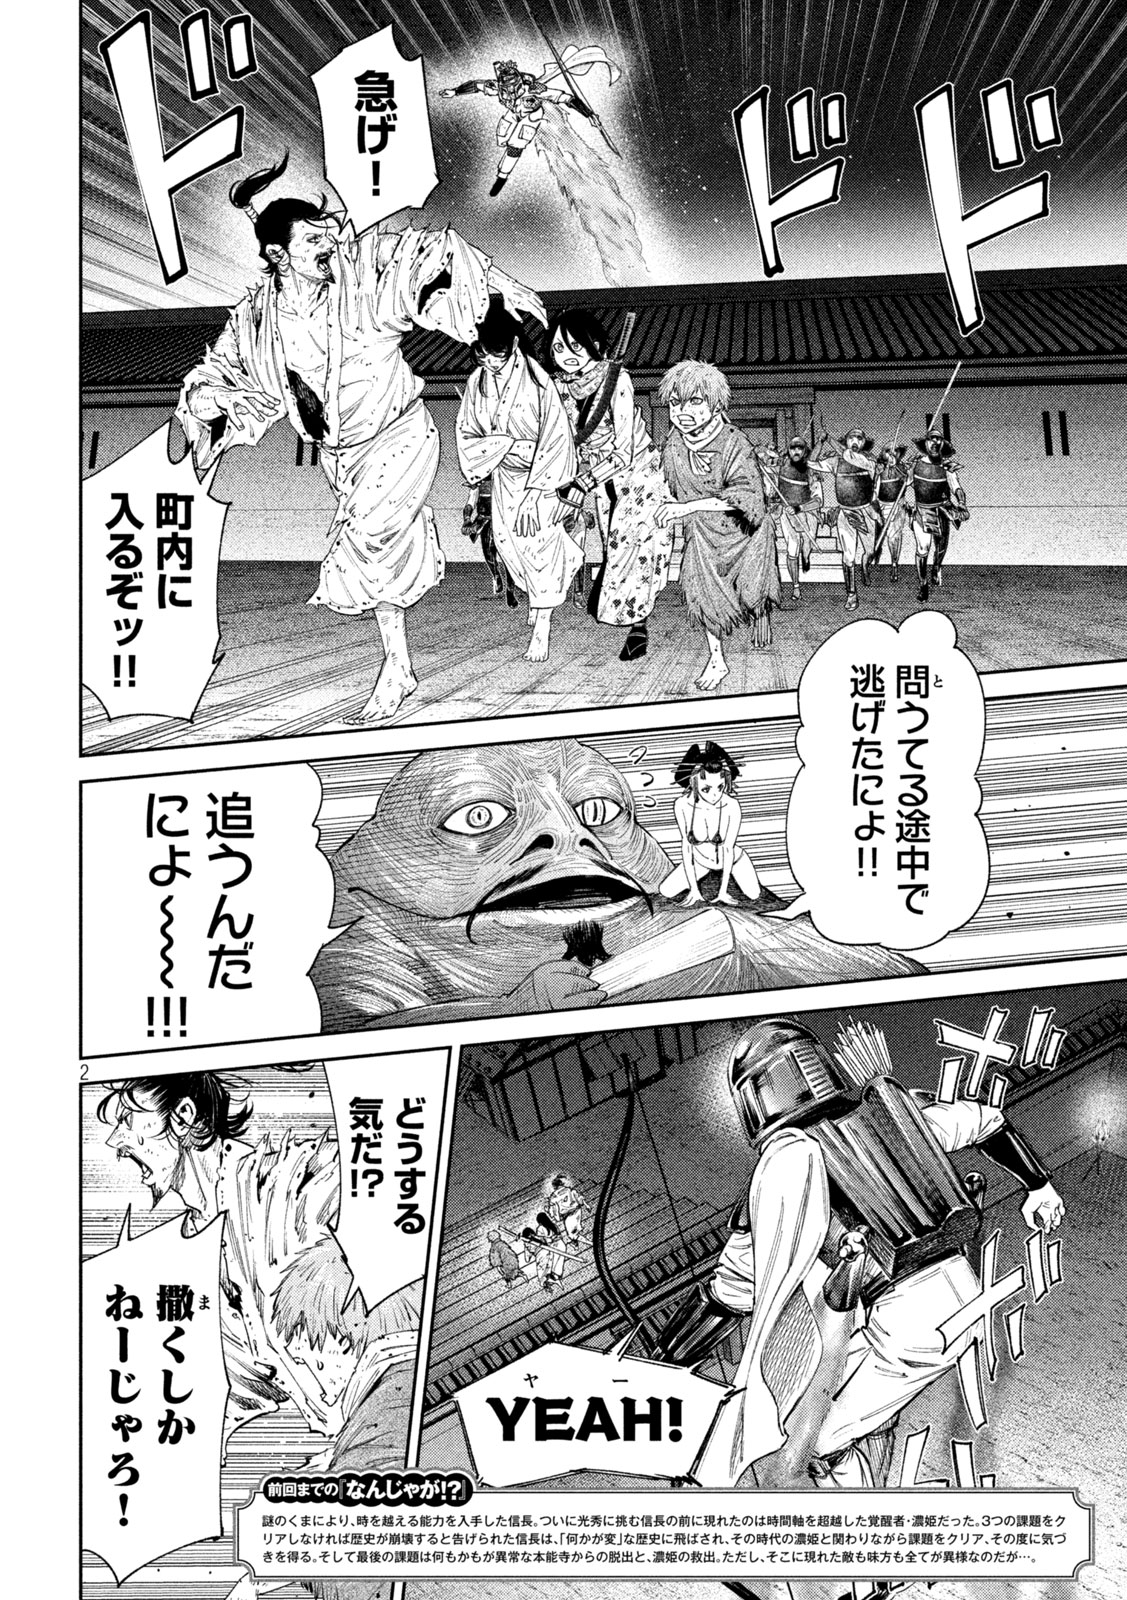 Nando toki o kurikaeshitemo Honnouji ga moerunjaga! - Chapter 130 - Page 2